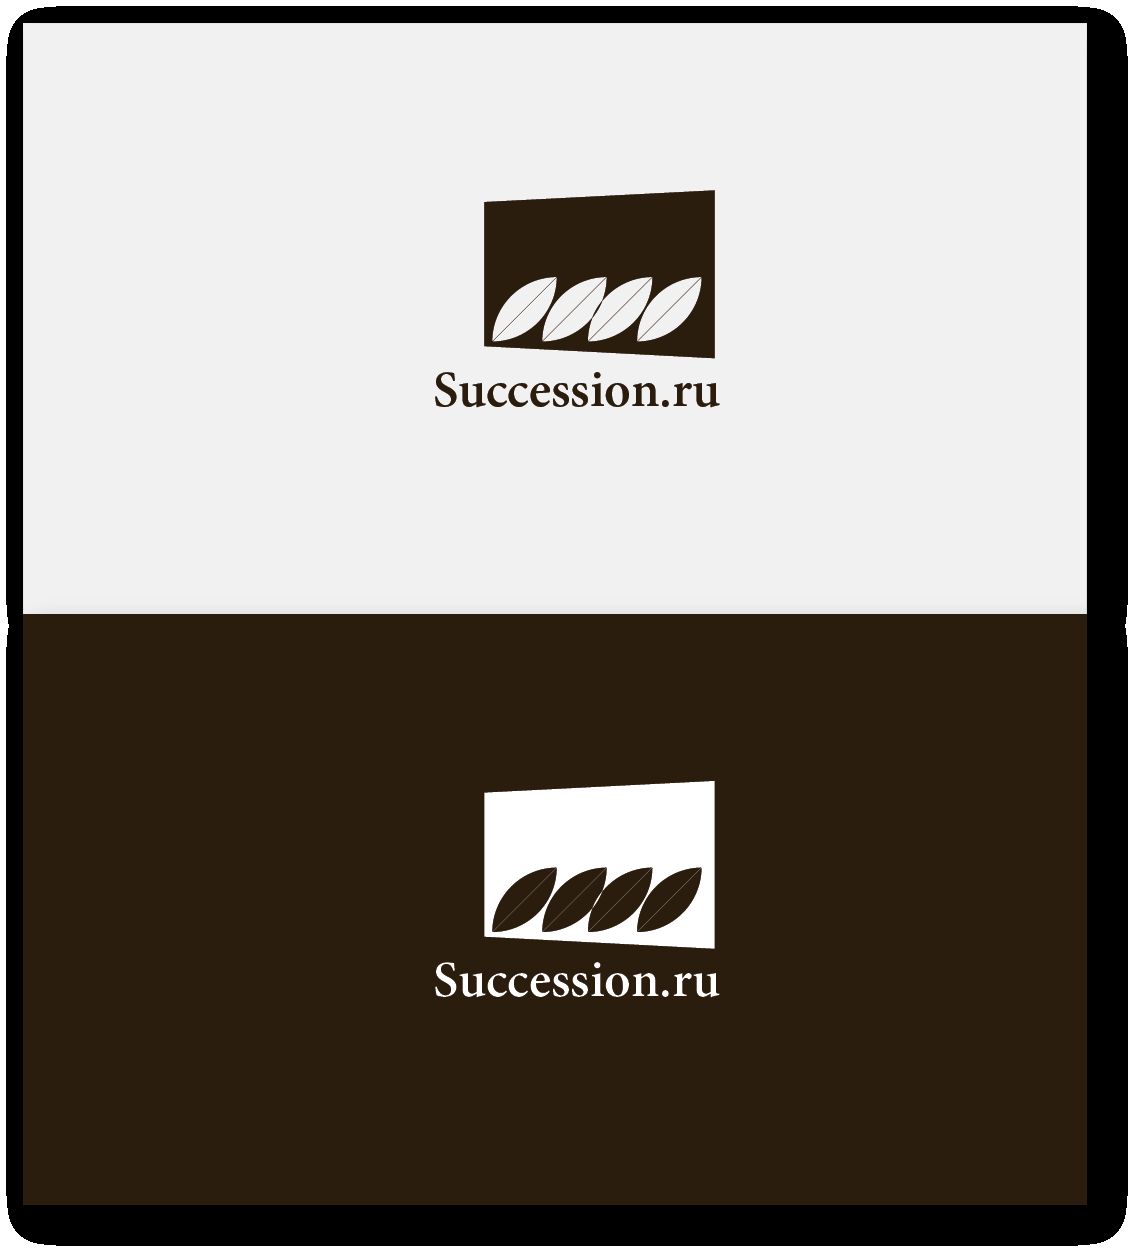 Лого сайта succession.ru (преемственность бизнеса) - дизайнер ruslan-volkov